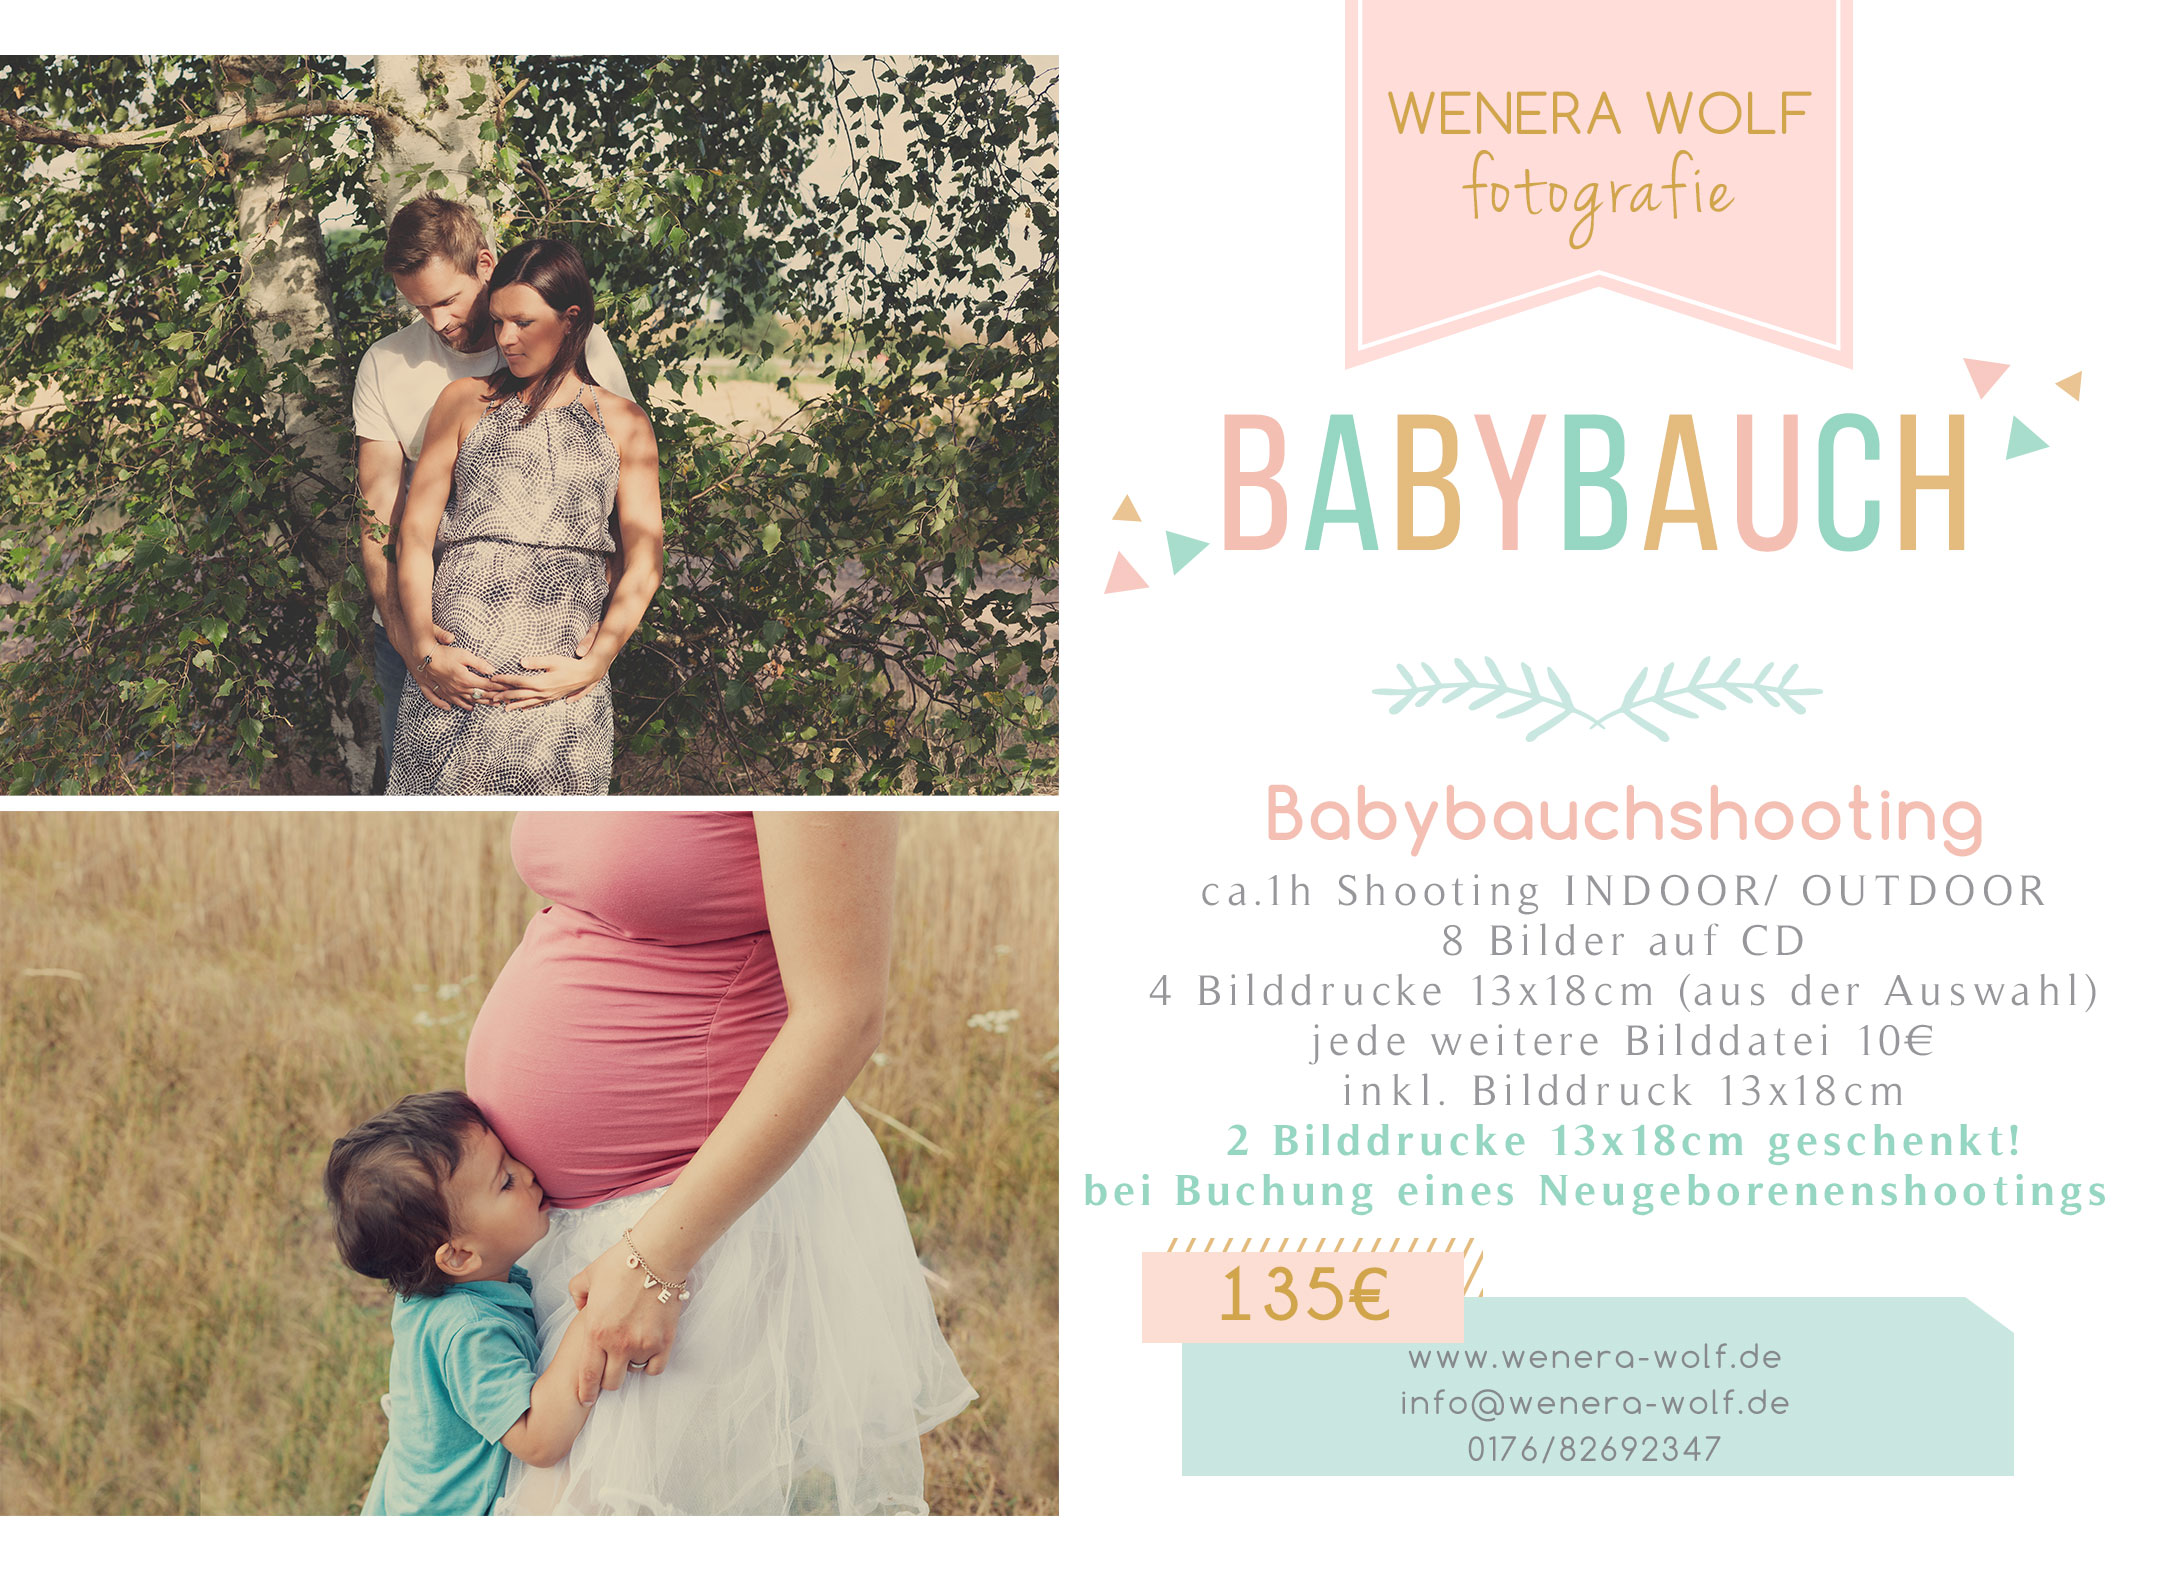 Babybauch Flyer Familienfotografin Wenera Wolf Fotografie Aus Speyer